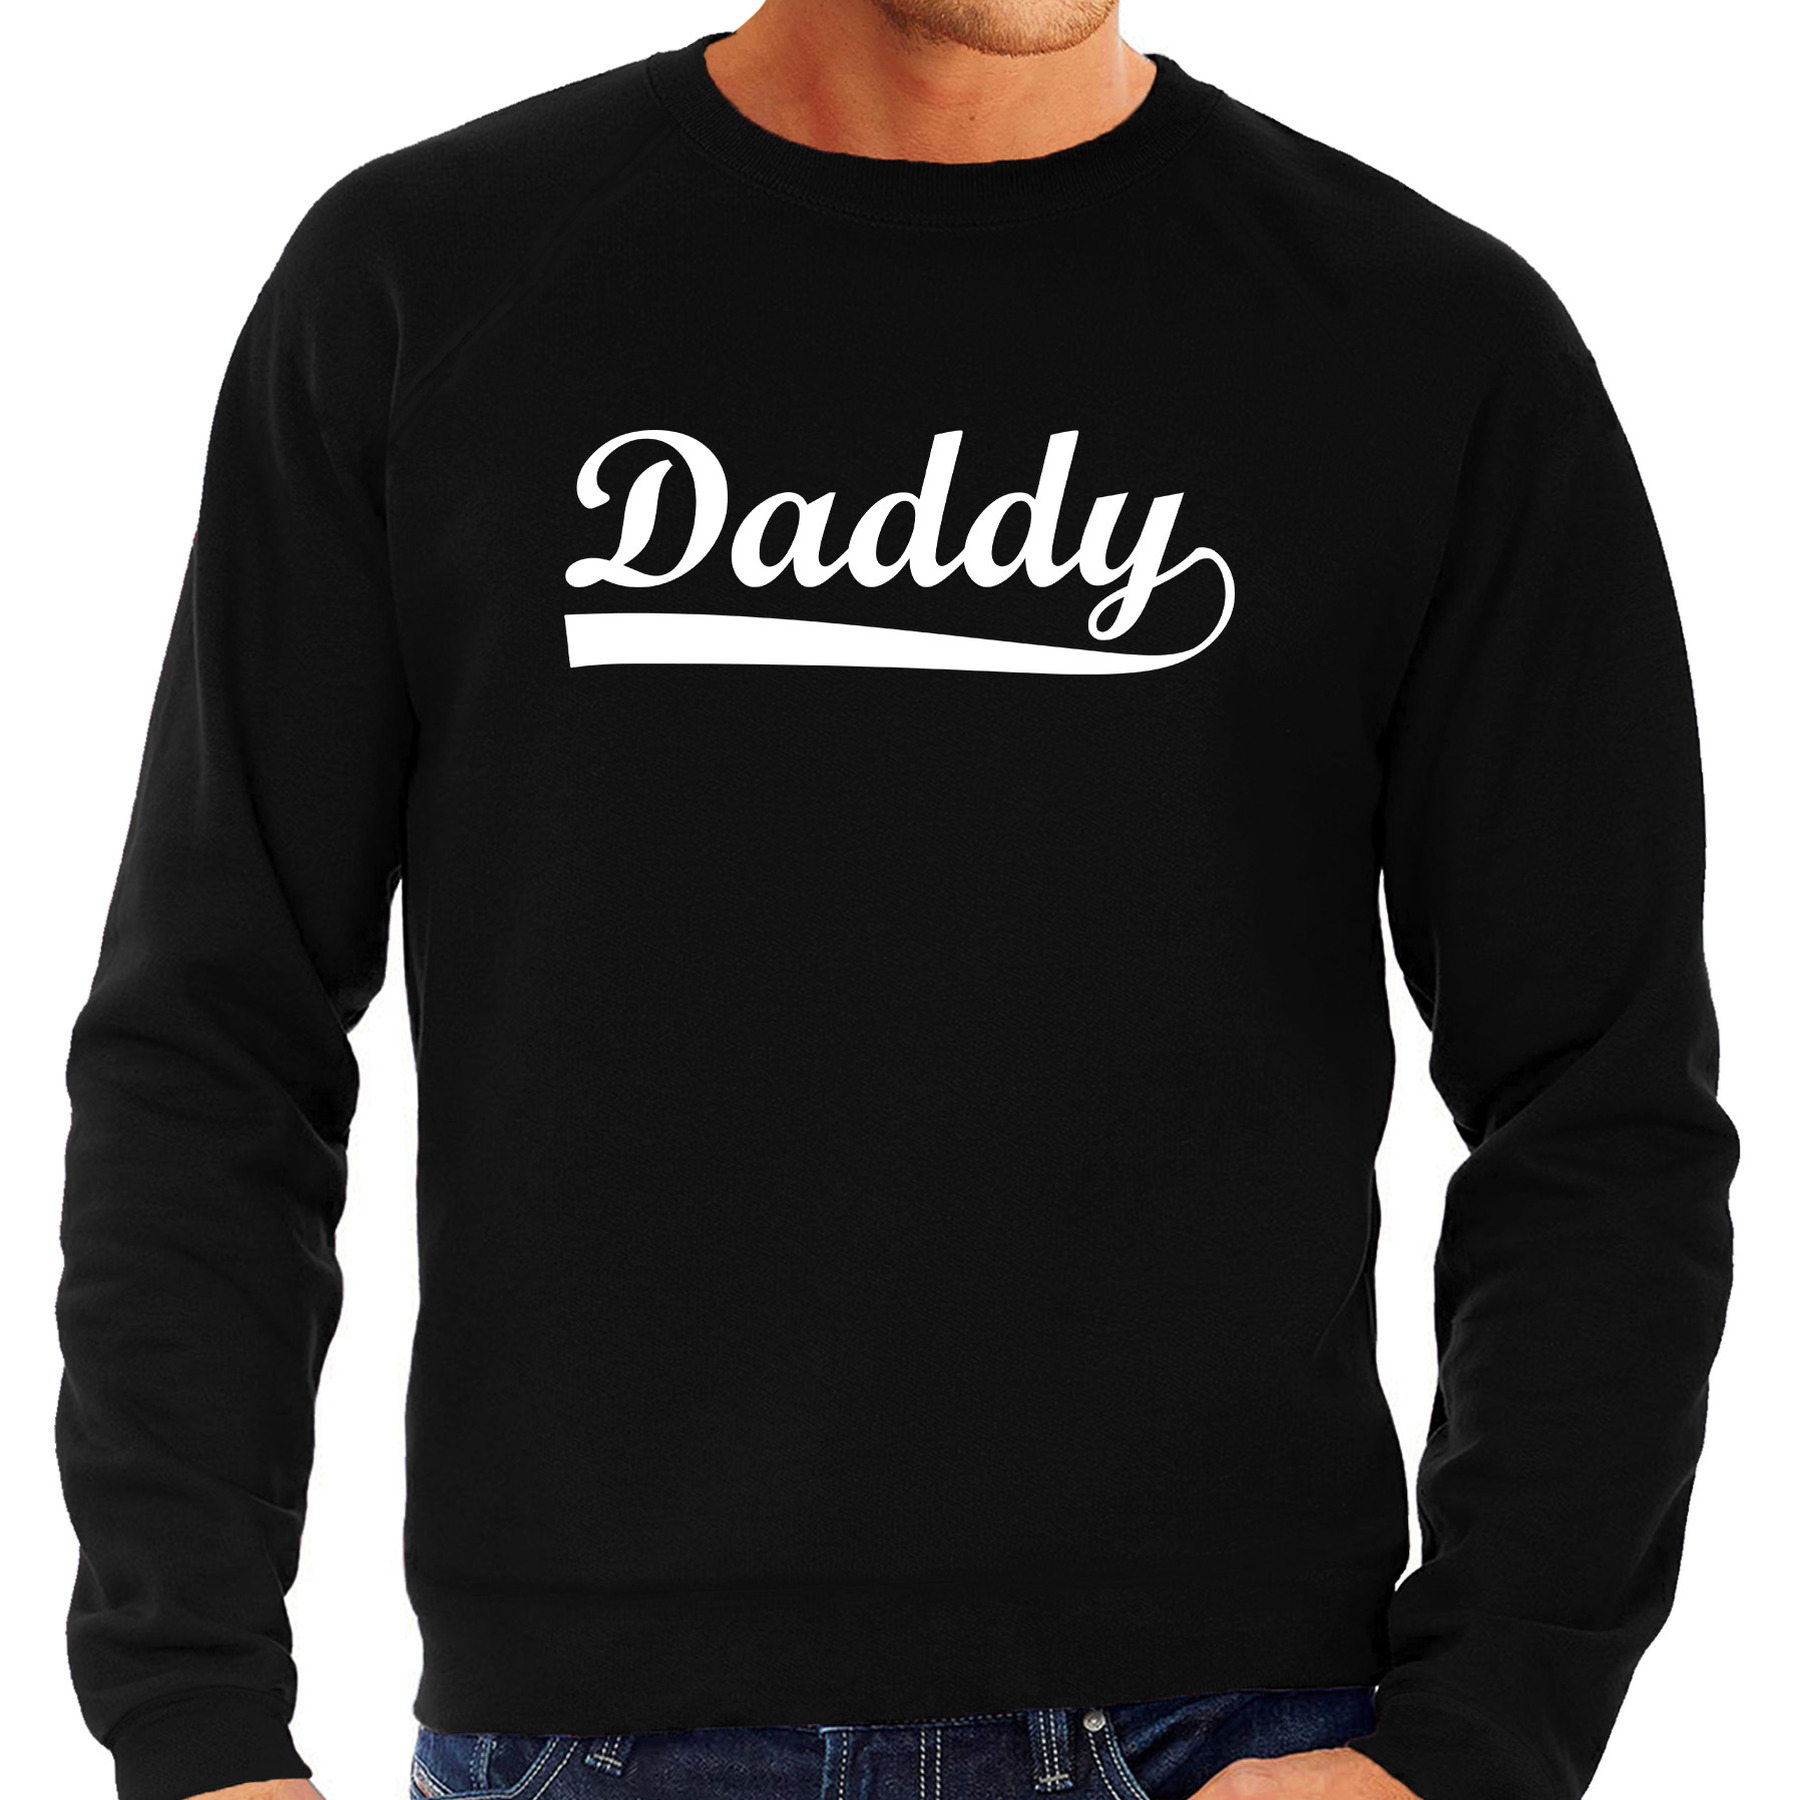 Daddy sweater / trui zwart voor heren - vaderdag cadeau truien papa